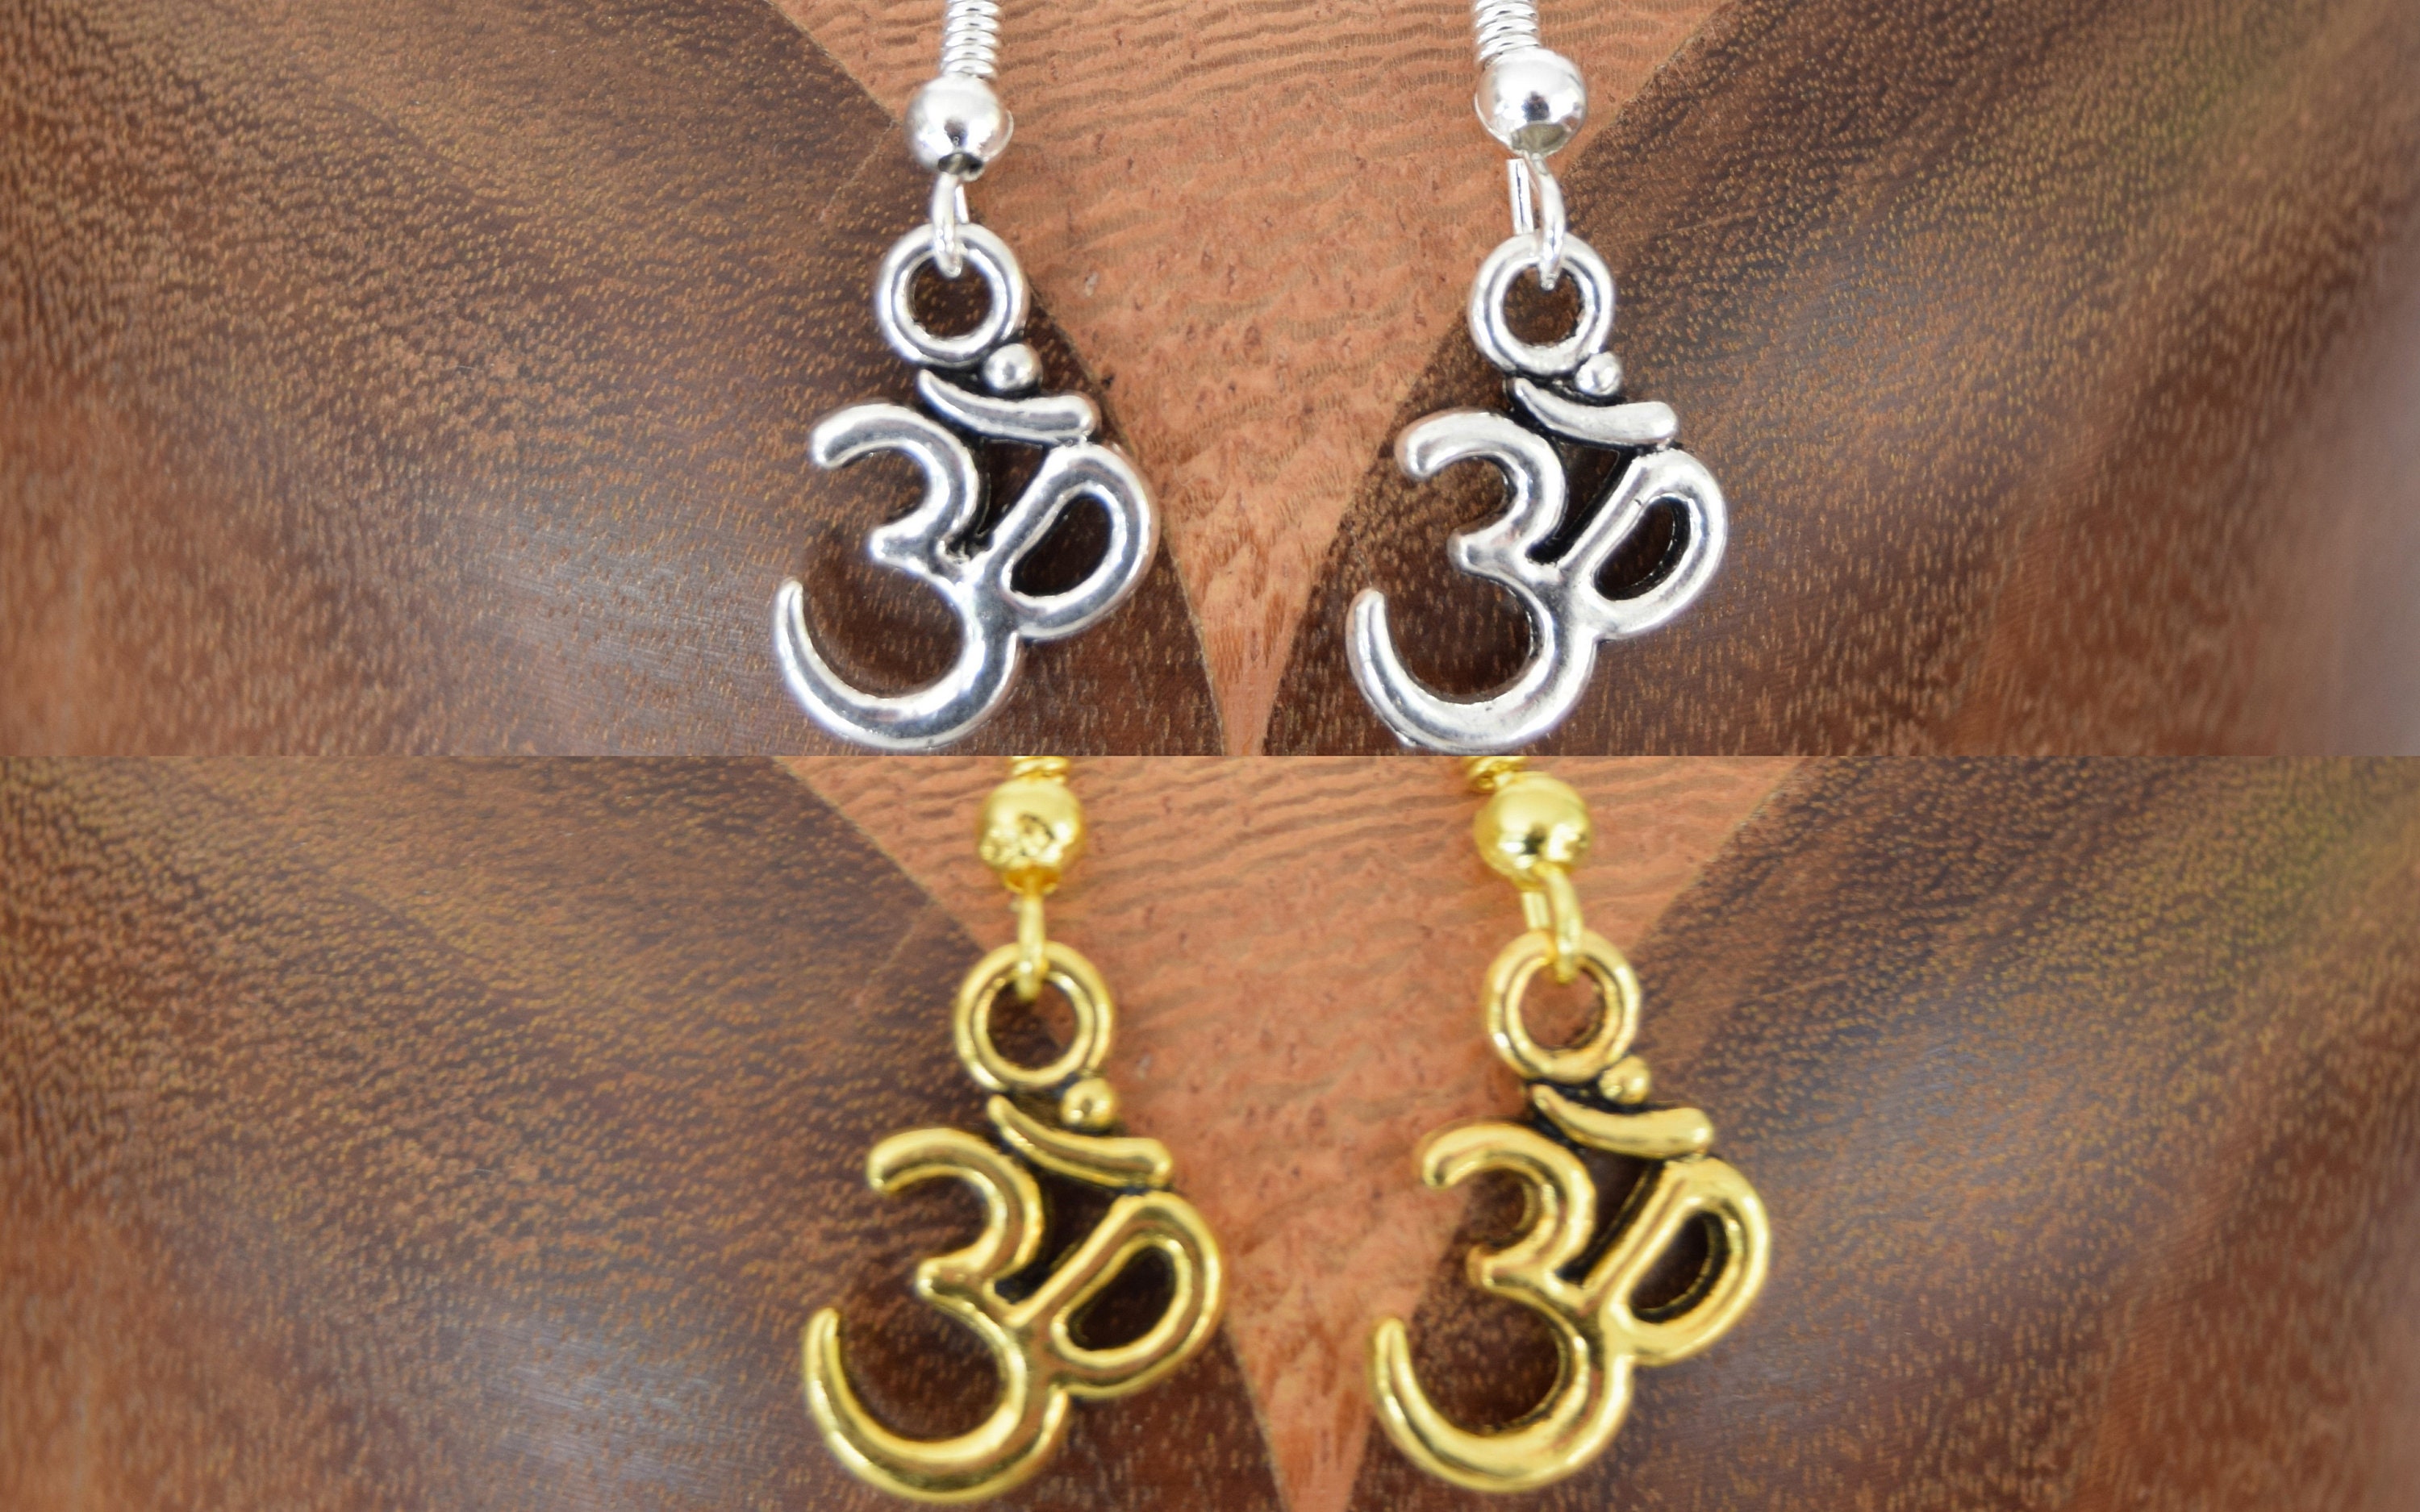 Share 133+ om earrings gold super hot